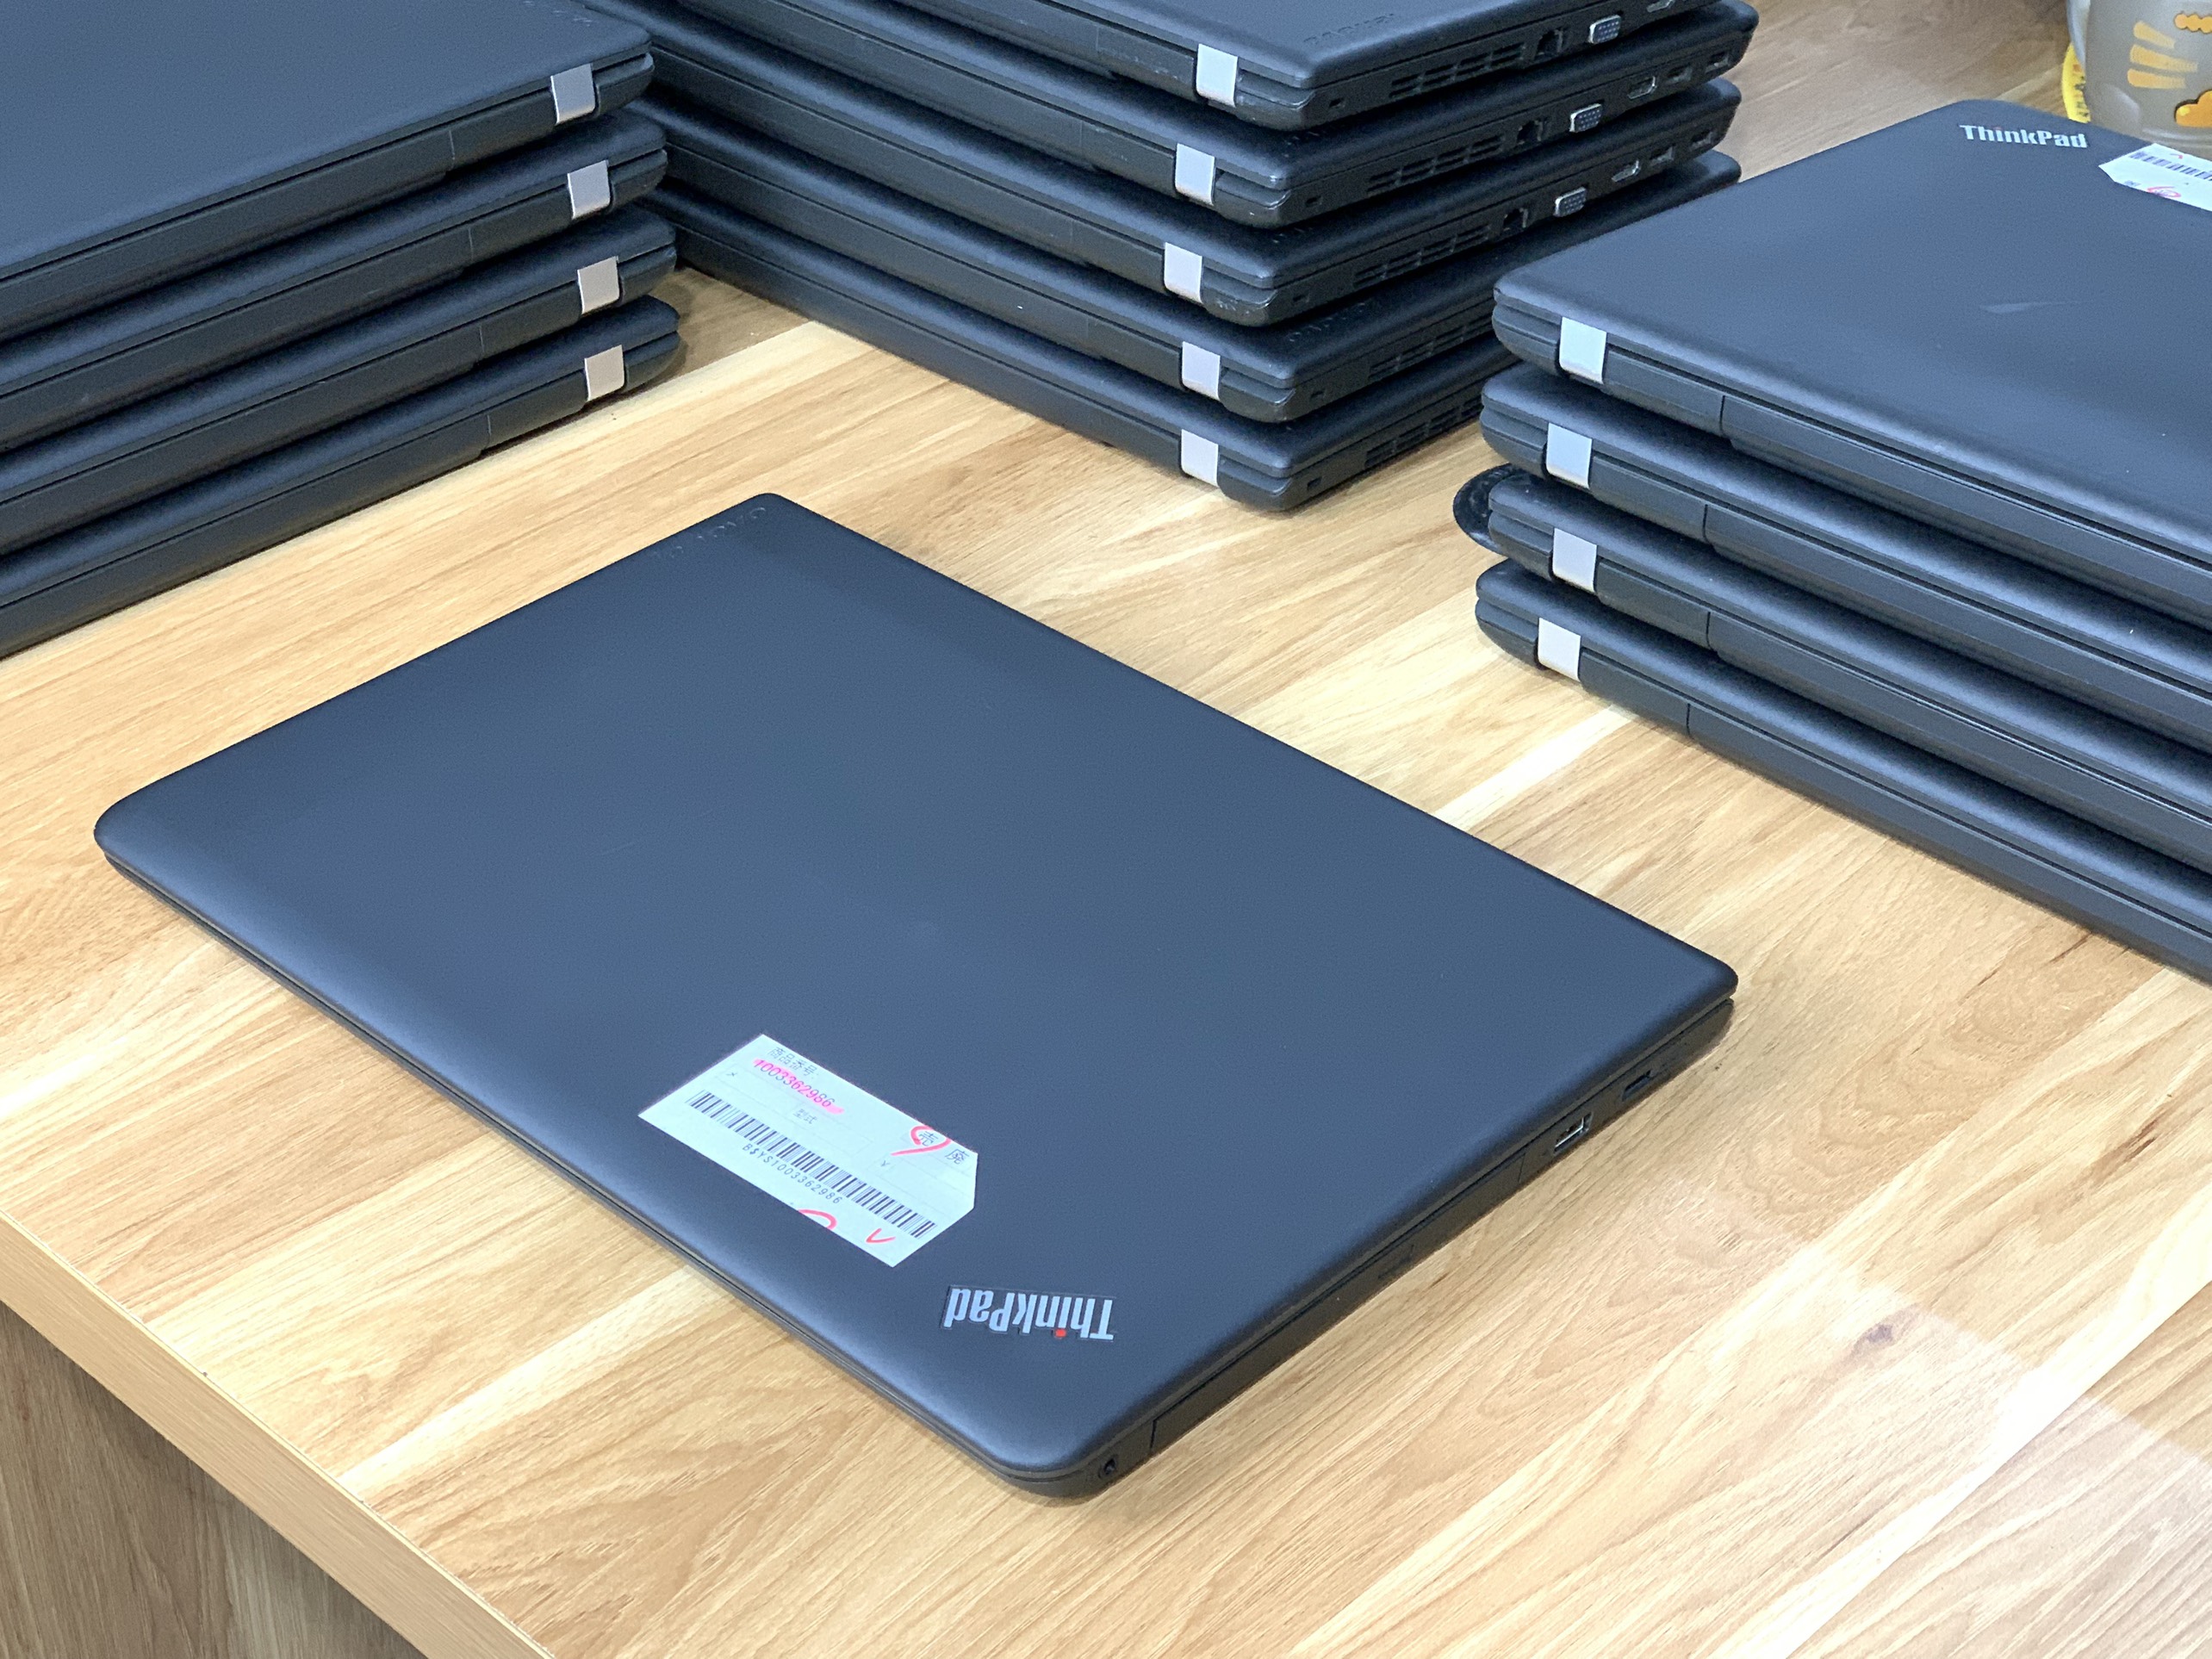 Lenovo ThinkPad E550: i3-5005U| RAM 4GB| SSD 120GB | 15.6 HD